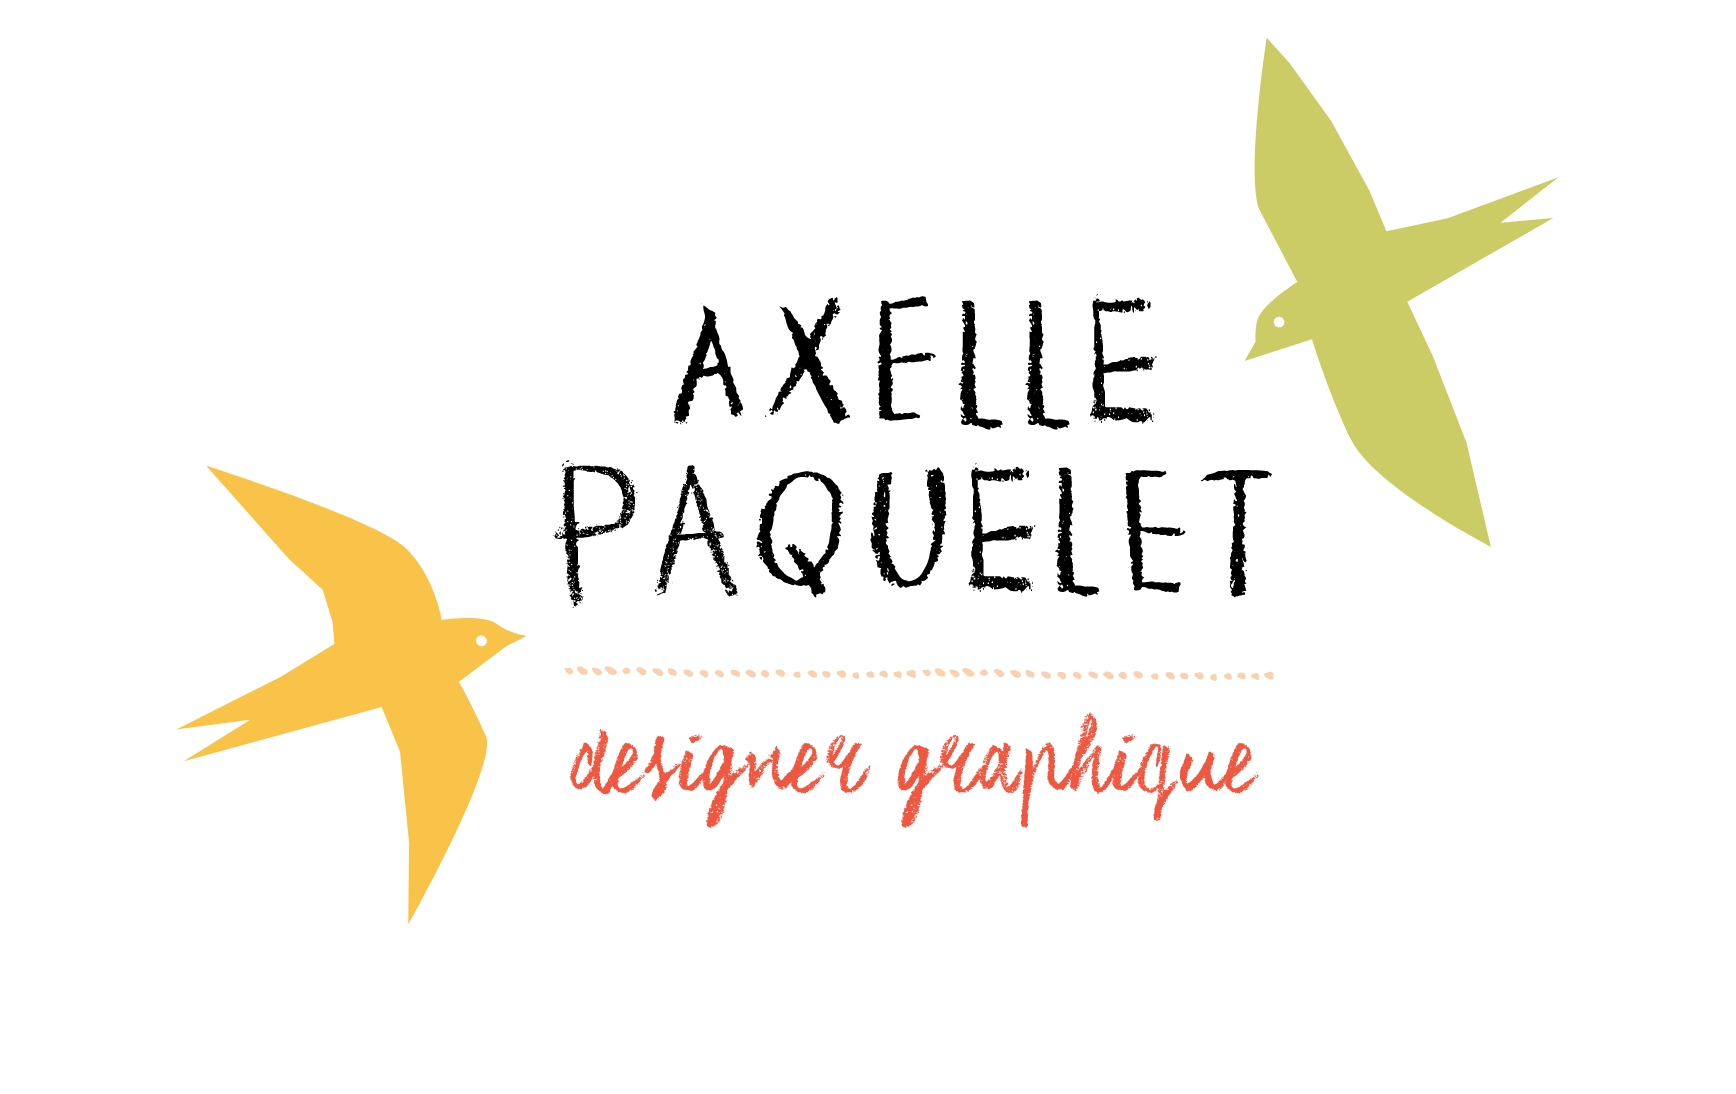 Axelle Paquelet